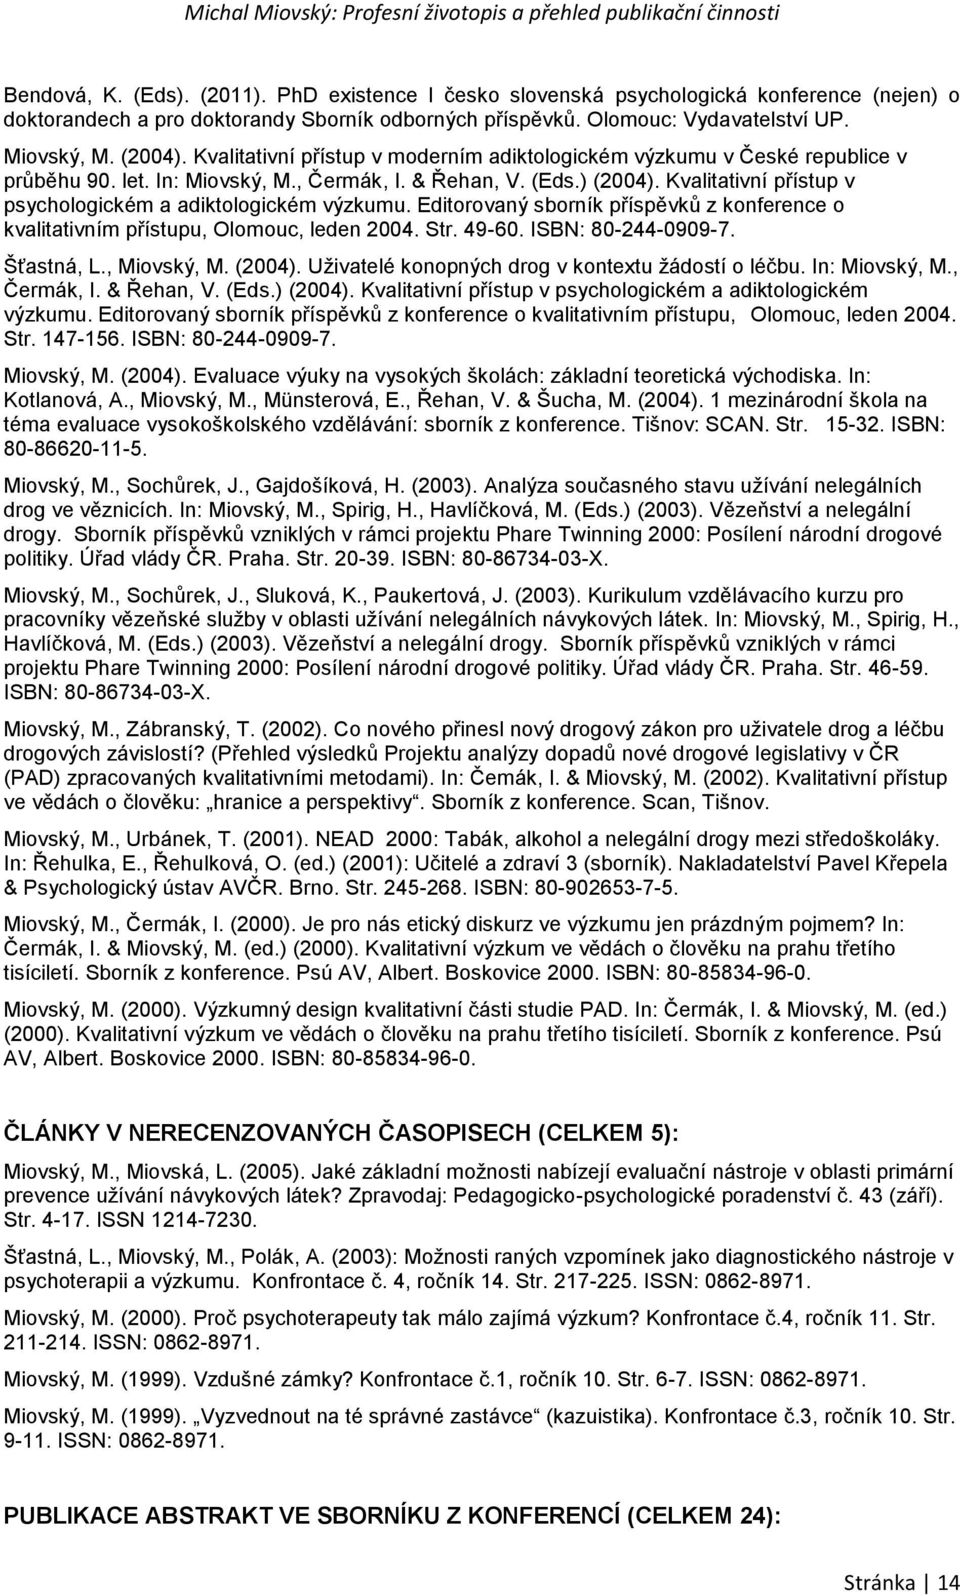 Kvalitativní přístup v psychologickém a adiktologickém výzkumu. Editorovaný sborník příspěvků z konference o kvalitativním přístupu, Olomouc, leden 2004. Str. 49-60. ISBN: 80-244-0909-7. Šťastná, L.